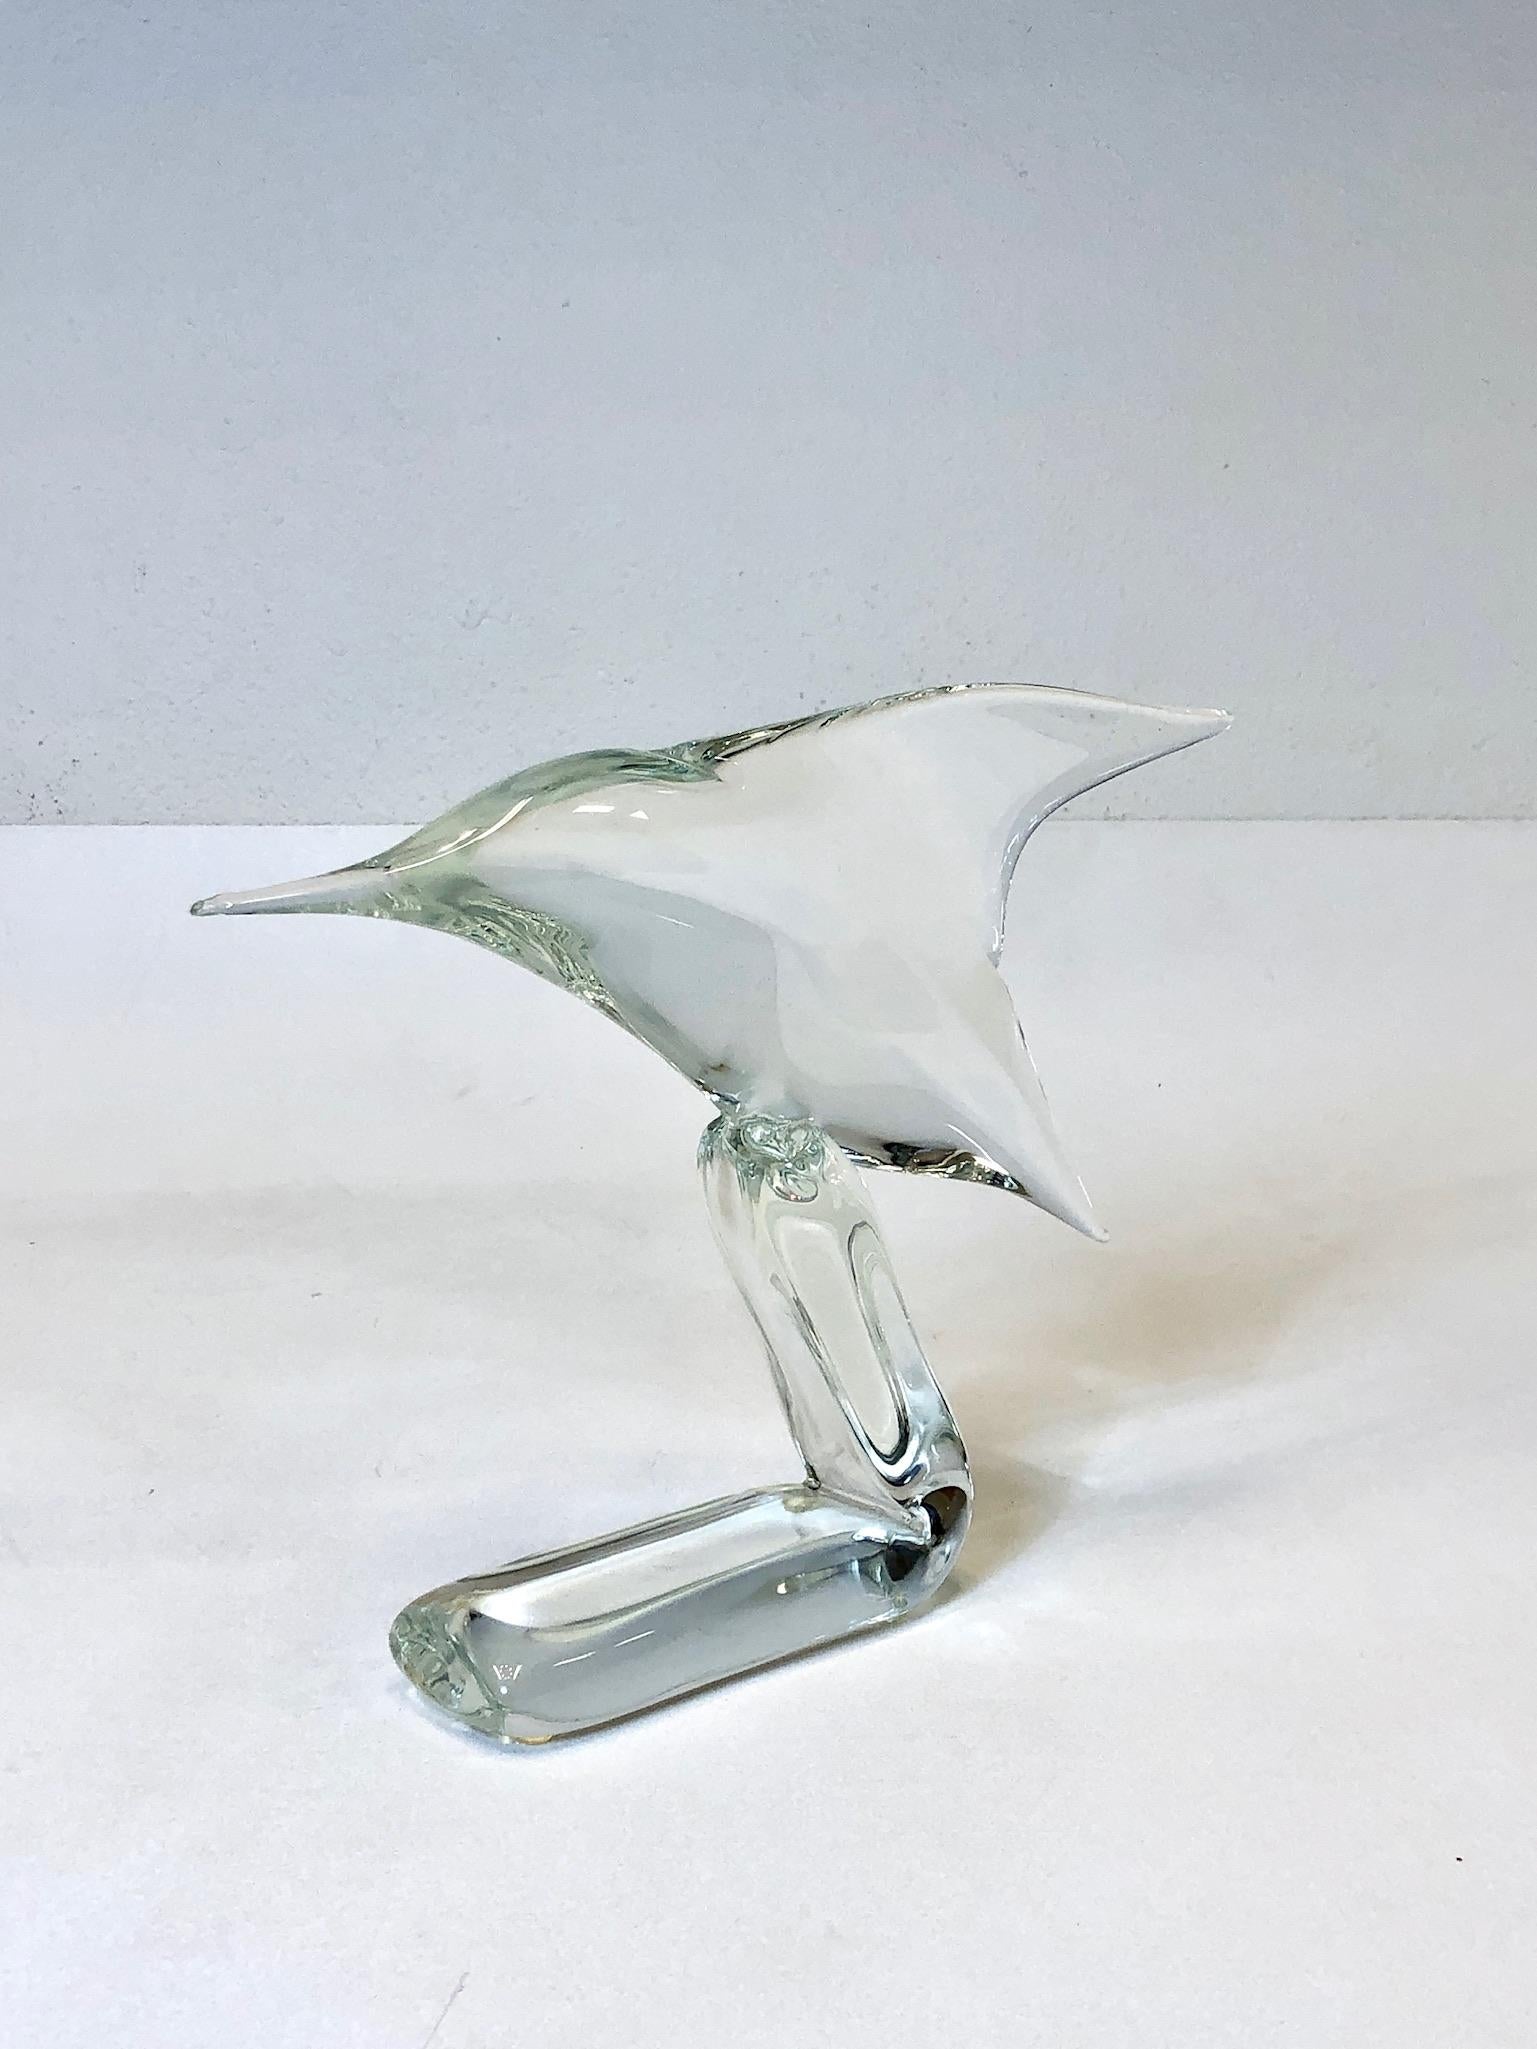 1980’s Italian clear Murano glass hummingbird sculpture by Licio Zanetti.
Signed Zanetti L.
Measurements: 15” wide 2.75” deep and 11” high.